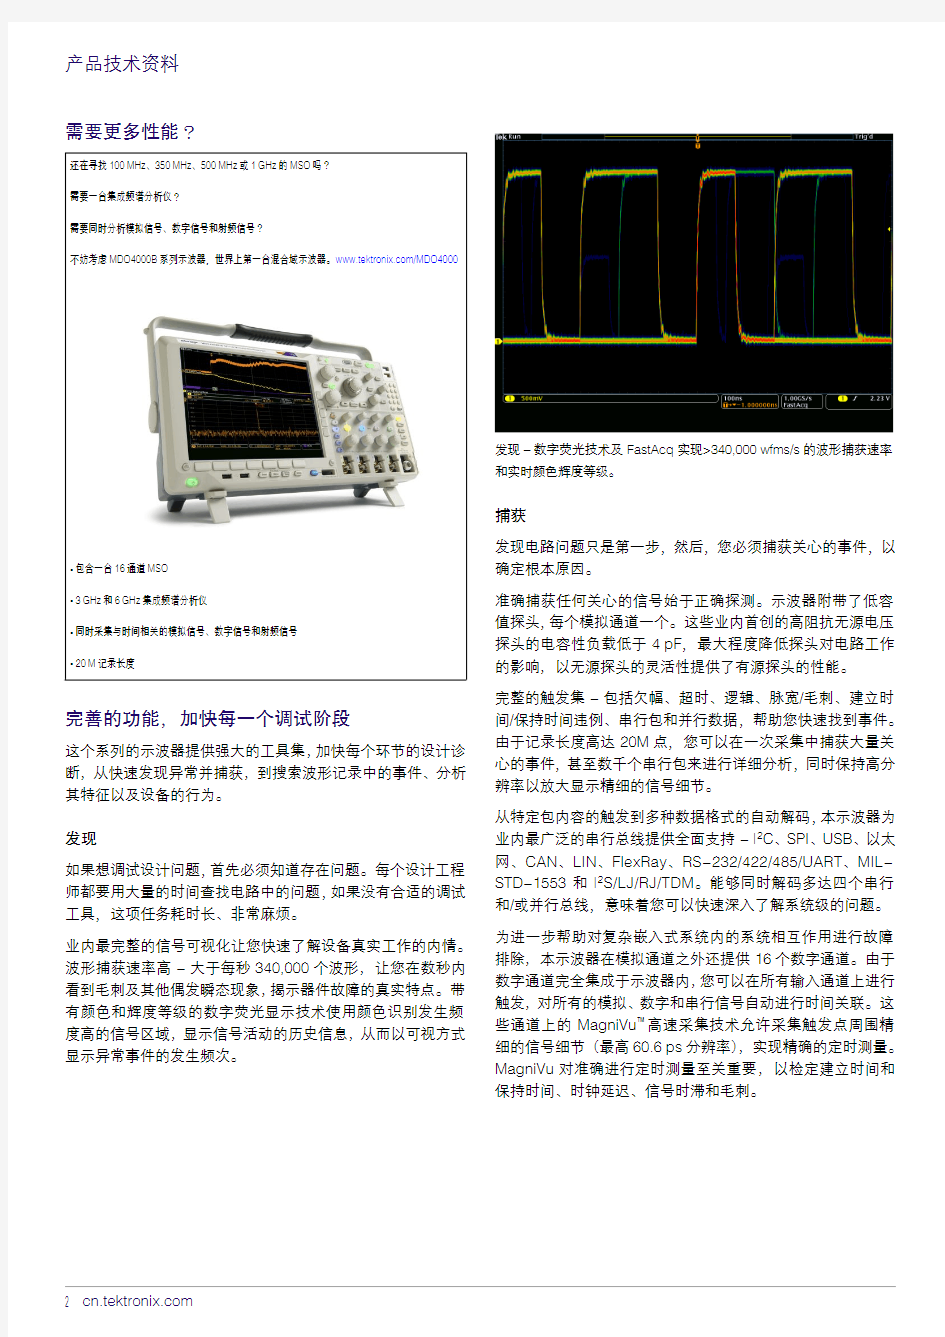 MSO4000混合信号示波器系列技术资料